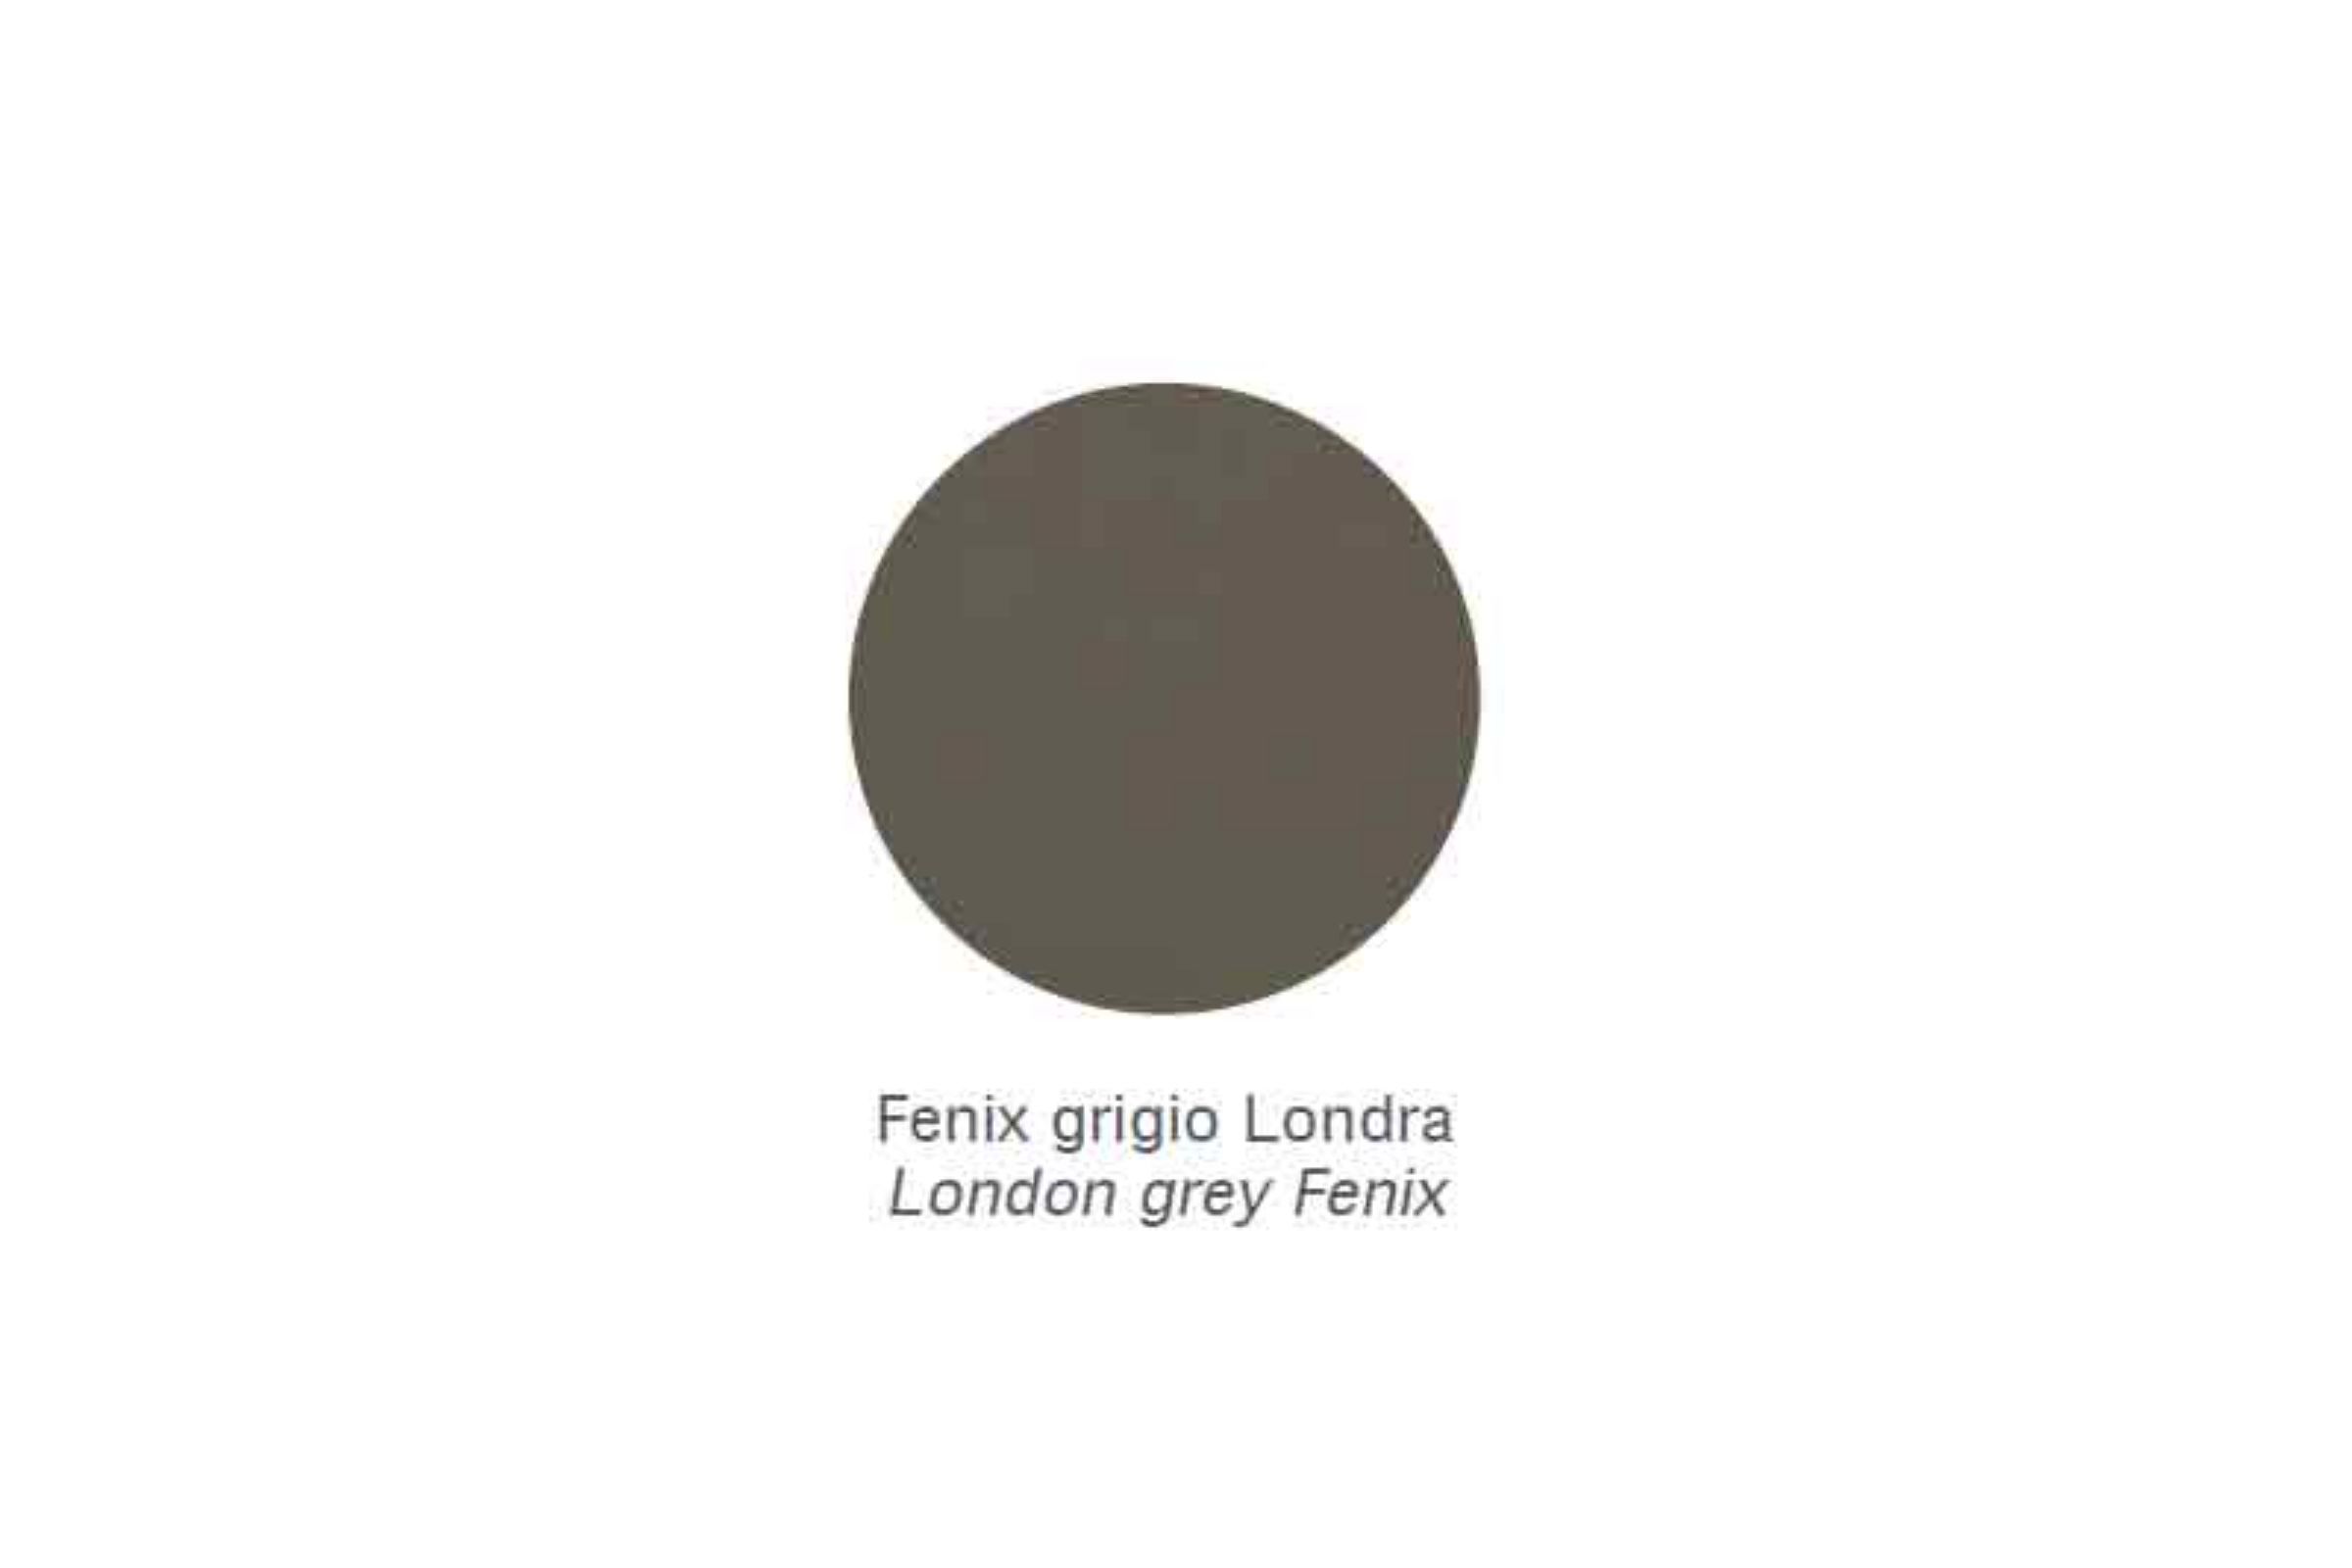 Porta spazzolini a muro con 4 inserti in metallo - Porta spazzolini a muro con 4 inserti in metallo Fenix grigio Londra